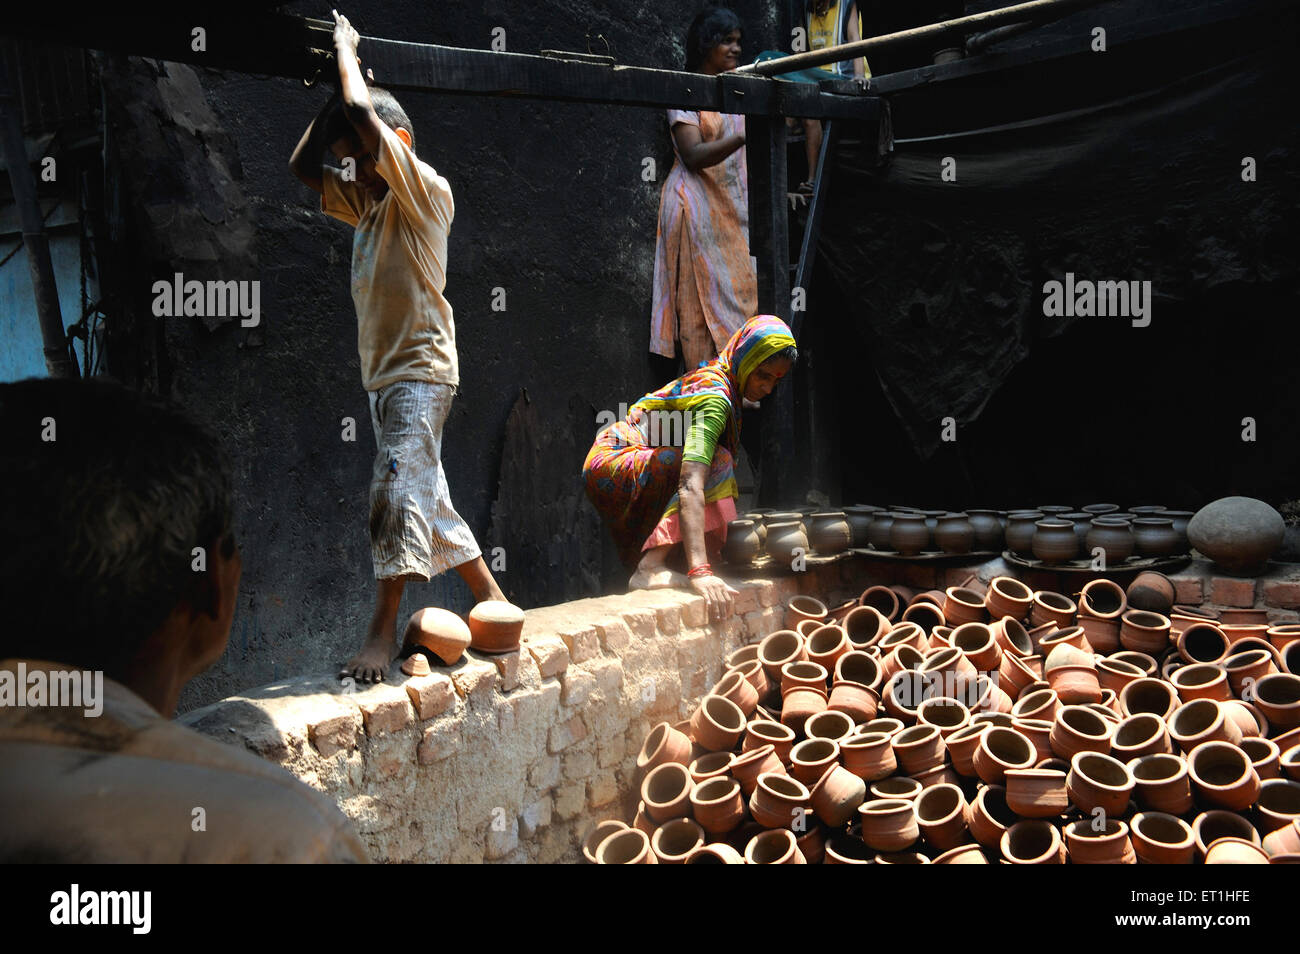 Fabrication de pots d'argile de terre, Dharavi, Bombay, Mumbai, Maharashtra,Inde, Asie, Asie, Indien Banque D'Images